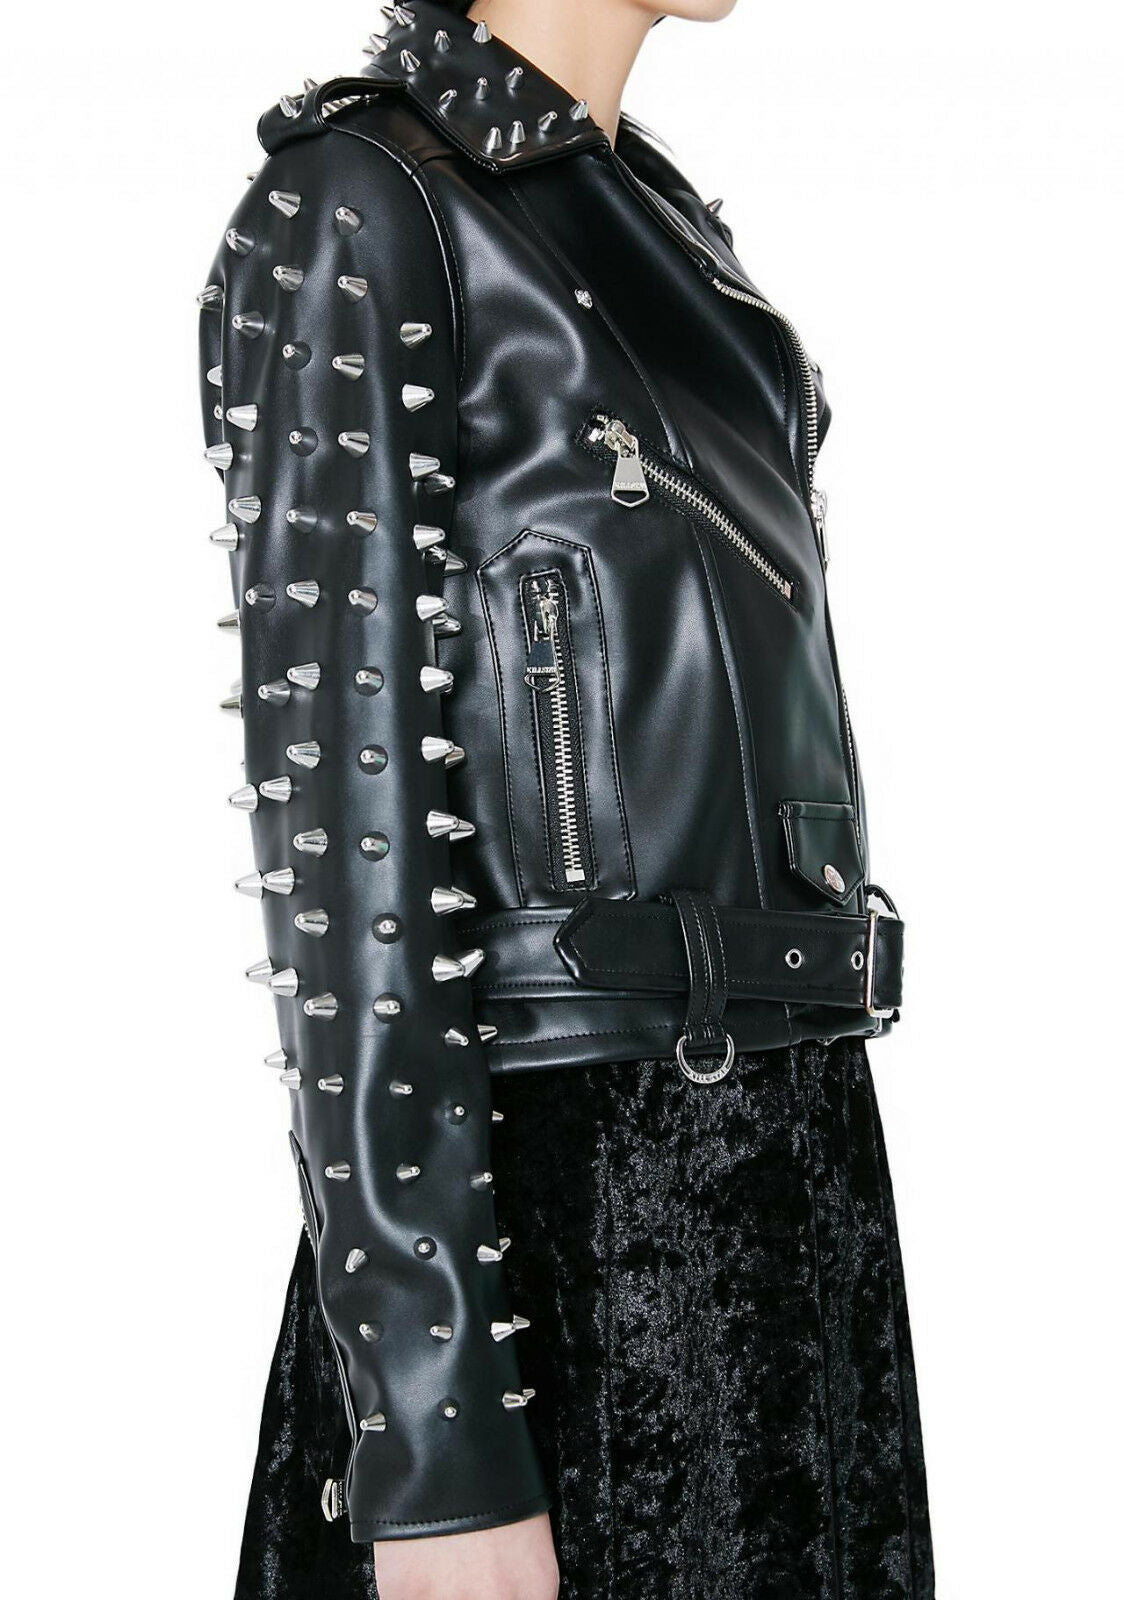 Women's Black Color Biker Genuine Leather Silver Spike Studded Belted Jacket